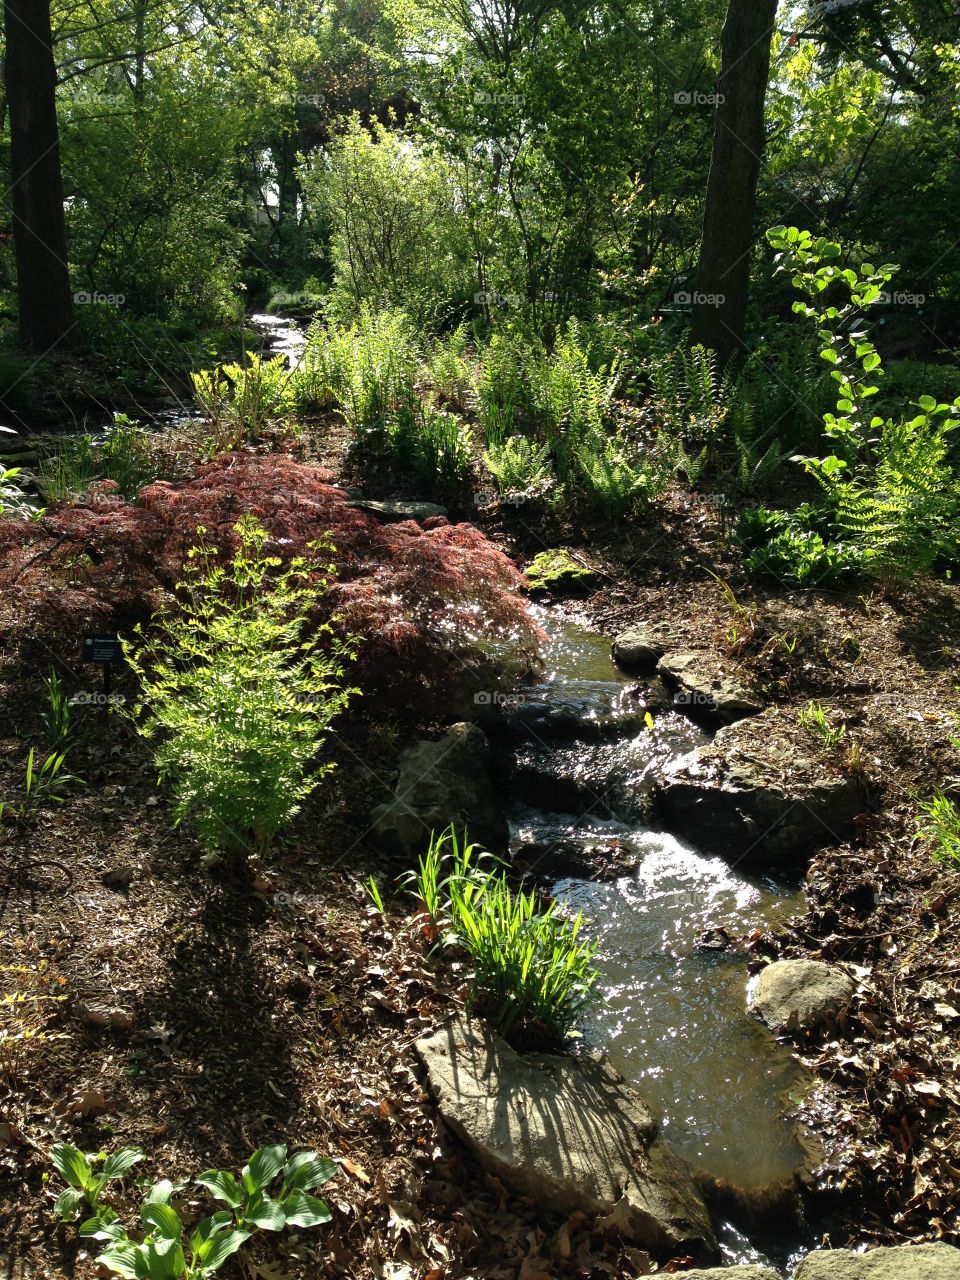 Creek in the Woodland Garden. Taken at the Missouri Botanical Garden 